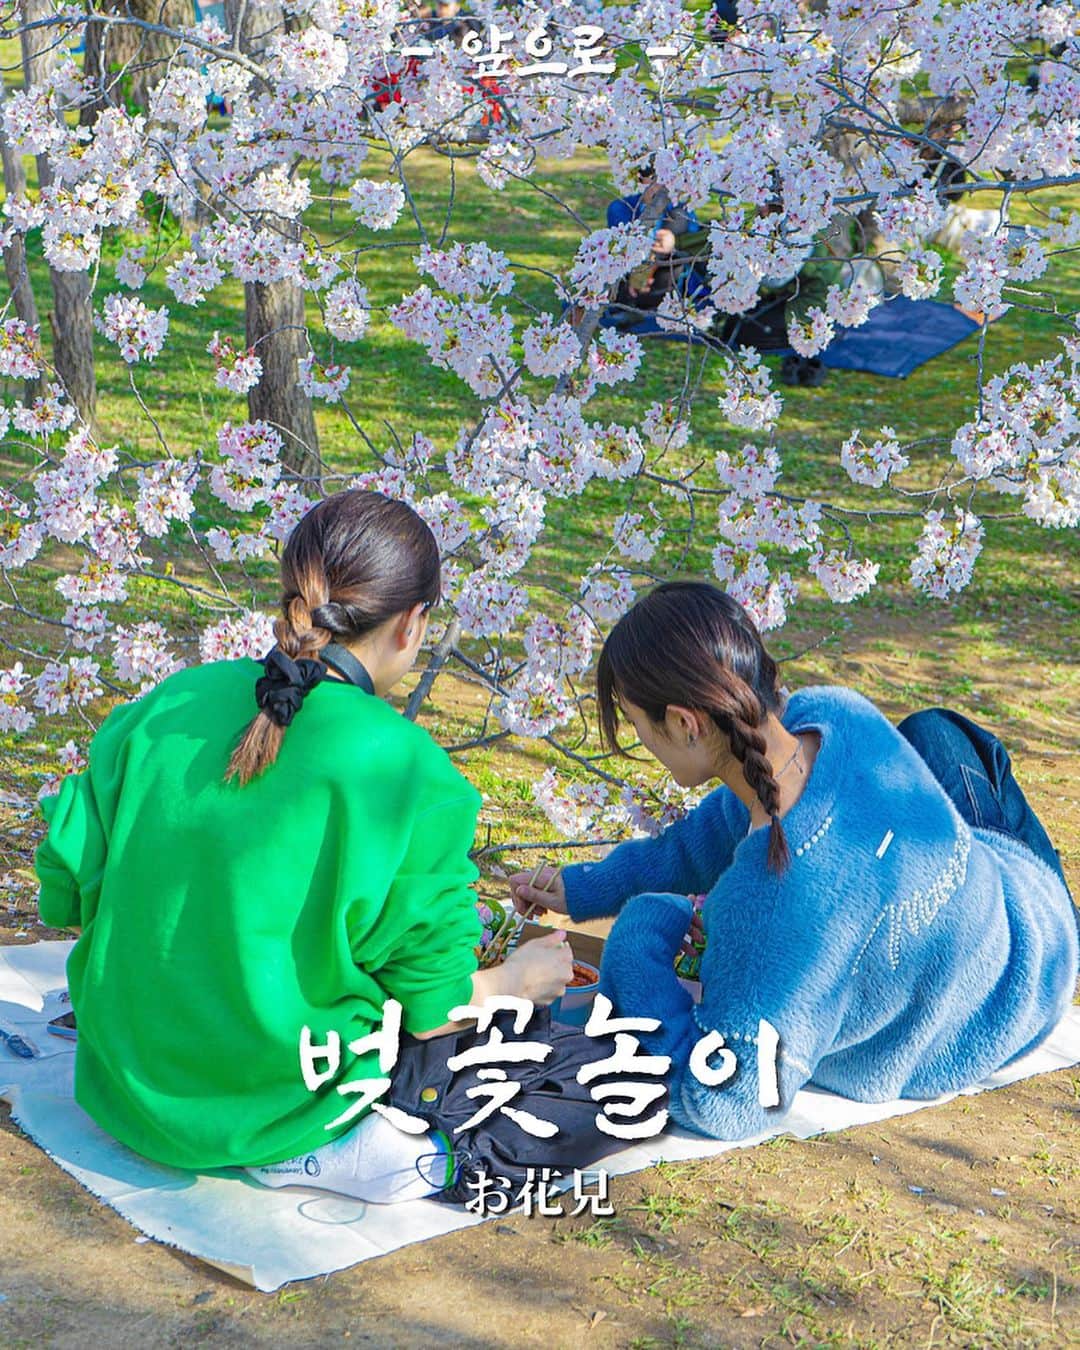 あぷろ大名店のインスタグラム：「\ 안녕하세요 🇰🇷 / 福岡の韓国料理屋 あぷろです🐷 ⁡ お天気が良く、桜が満開に咲いてお花見日和ですね🌸 そんなお花見にぴったりのお弁当とセットをもってスタッフと舞鶴公園へお花見に行ってきました🥹✨  ⁡🌸 あぷろ満喫弁当 ¥1,100(税込) 🌸あぷろボックス　¥3,500(税込) 　（2.3人前くらいの量です。）  どちらもあぷろ大名店にて販売してます😉🌸 お花見やピクニックにぴったり！ ⁡ 是非いかがですか🌸🌸？ ⁡ ※Uber Eatsでは販売しておりません。 ※事前のご予約をしていただけると、スムーズにお渡しできます。 ⁡ ⁡ ✄･･━━･･━━･･━━･･━━･･━━･･━━ 📍あぷろ各店舗紹介 ⁡  @apuro_ohashi  @apuro_yakuin  @apuro_hakata  @apuronishijin  @apurokukohigashi  @apuro_kurosaki  @apurotakamiya  @apuro1992  @apuronanakuma  @apuro_osaka_shinsaibashi  ⁡ ✄･･━━･･━━･･━━･･━━･･━━･･━━･･ ⁡ 🚩あぷろ大名店本店 ▷ 福岡県福岡市大名𝟭-𝟵-𝟮𝟯 大名ハーモニービル𝟭𝗳 ▷ プラザホテル天神を赤坂方面に直進 ▷ かに通赤坂店さんから徒歩𝟯𝟬秒 ▷ 赤坂駅から徒歩𝟱分 ▷ 店の前にコインパーキング有り ⁡ 🕙 営業時間 ▷ 店内 ランチ 𝟭𝟮 :𝟬𝟬-𝟭𝟱:𝟬𝟬（𝗹.𝗼𝟭𝟰:𝟯𝟬） ディナー　𝟭𝟳:𝟬𝟬-𝟮𝟯:𝟯𝟬 (𝗹.𝗼𝟮𝟯:𝟬𝟬) ▷ テイクアウト デリバリー 𝟭𝟭:𝟬𝟬-𝟮𝟮:𝟬𝟬 ⁡ 🥡 テイクアウトの注文について ▷ 𝟬𝟵𝟮-𝟳𝟭𝟰-𝟱𝟭𝟬𝟱にお電話していただいて注文していただけるとスムーズにお受けわたしできます。 ・名前 ・電話番号 ・商品名、数量 ・受取り希望時間 を、スタッフまでお伝えください！ ▷ お店に来ていただいての注文も可能です！ ⁡ ･･━━･･━━･･━━･･━━･･━━･･━━･･」